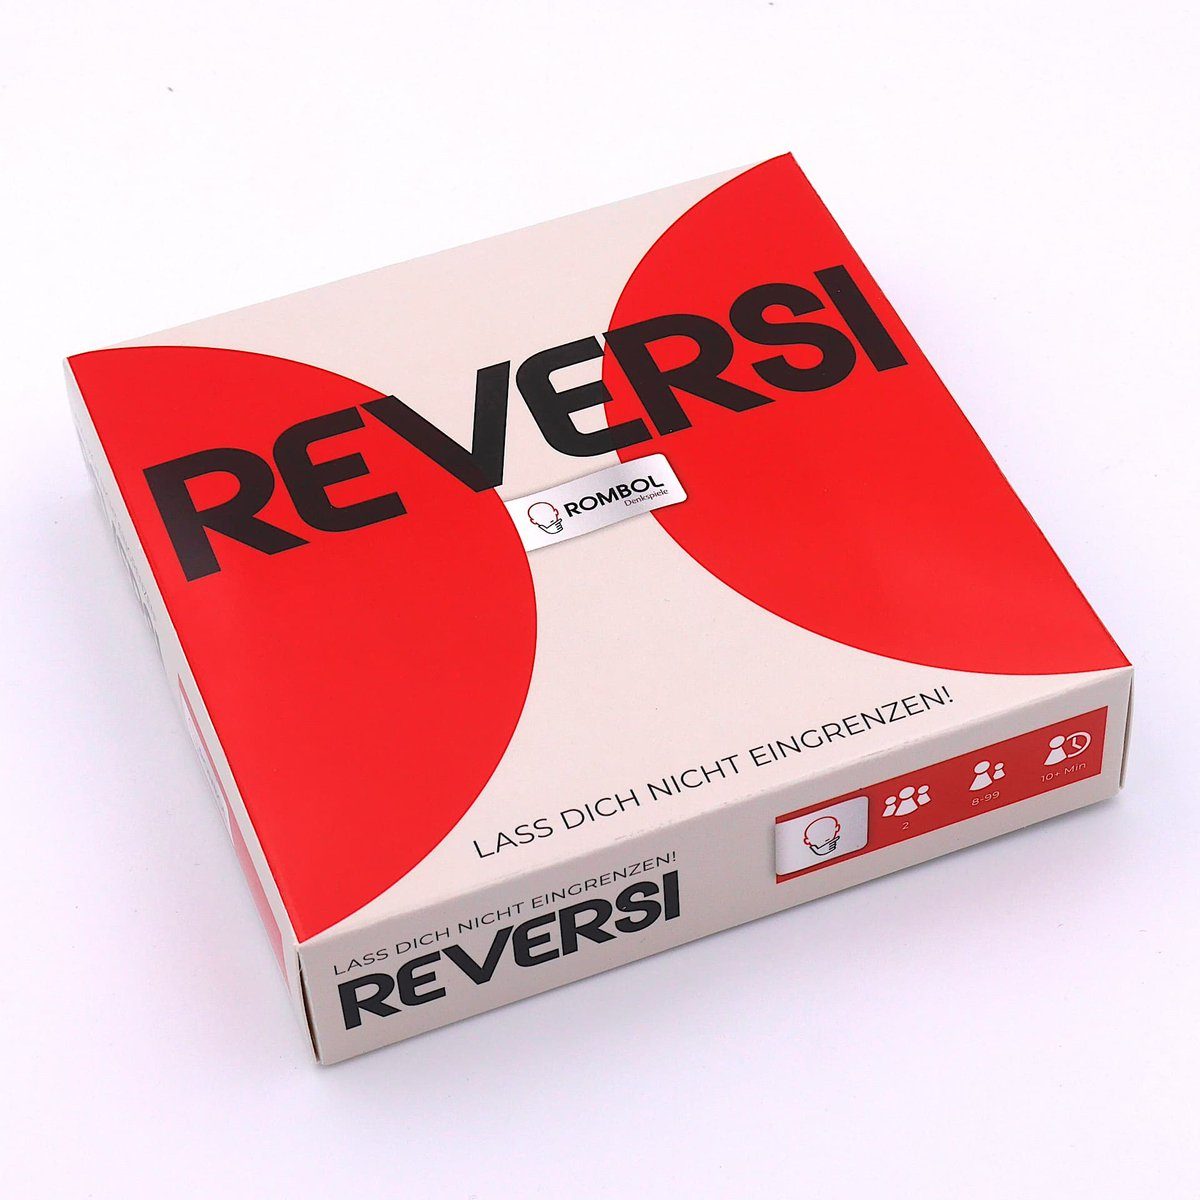 rot/weiß Brettspiel 2 edlem Holz, Strategiespiel Reversi Holzspiel Spiel, Interessantes ROMBOL Denkspiele aus – Personen für